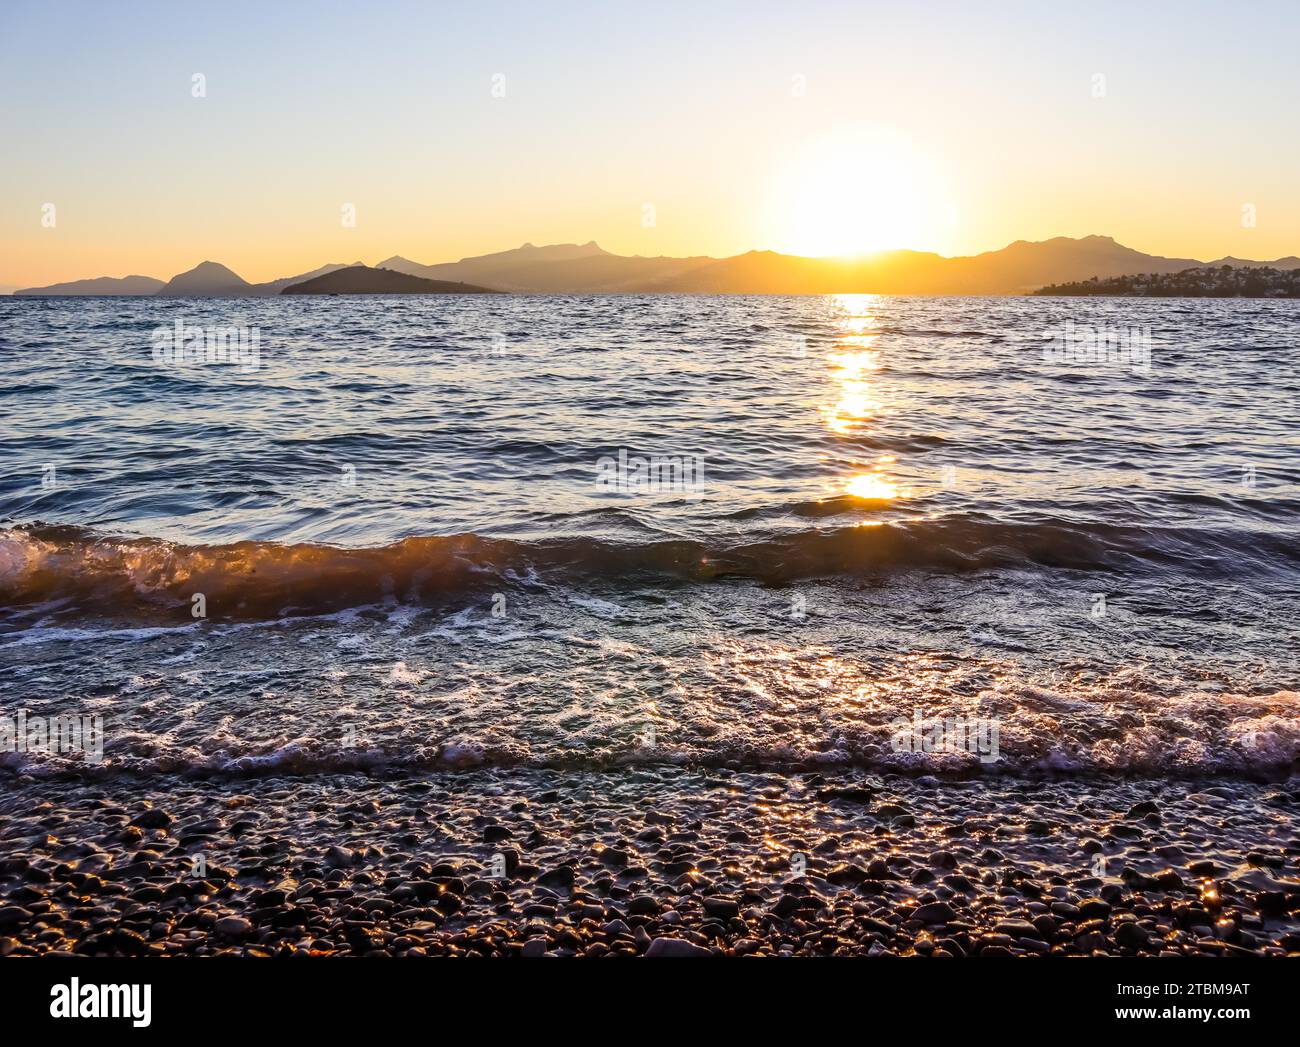 Magnifique coucher de soleil sur la côte méditerranéenne avec les îles et les montagnes. Pierres sur la plage éclairée par la lumière du soleil Banque D'Images